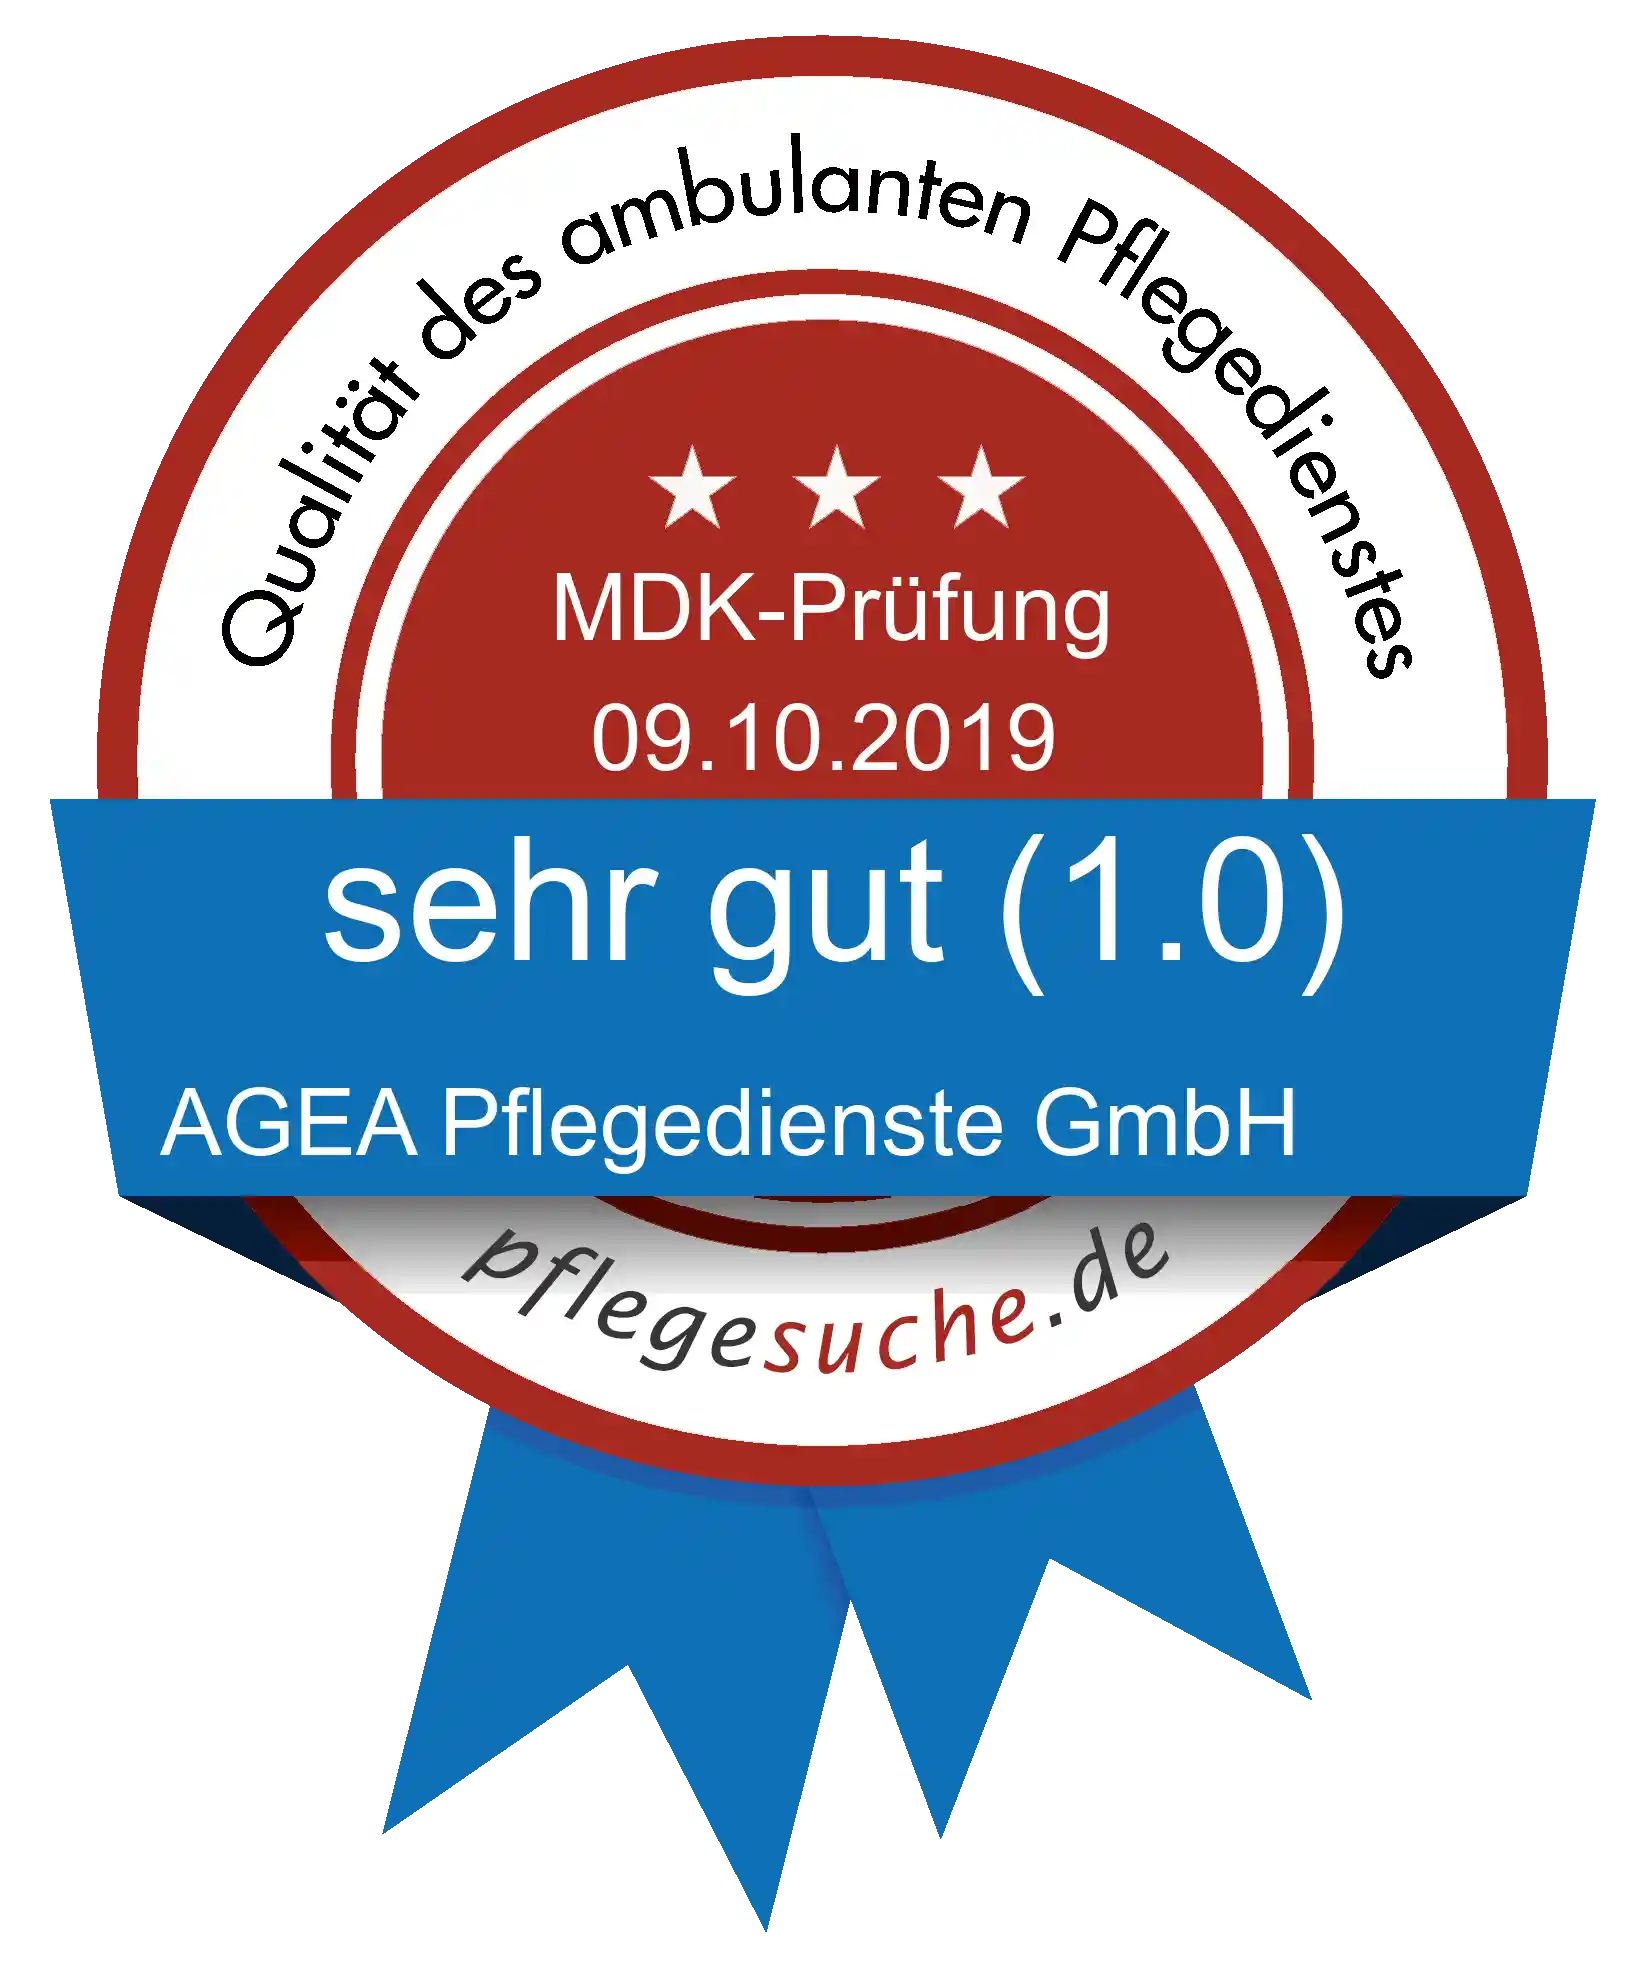 Siegel Benotung: AGEA Pflegedienste GmbH